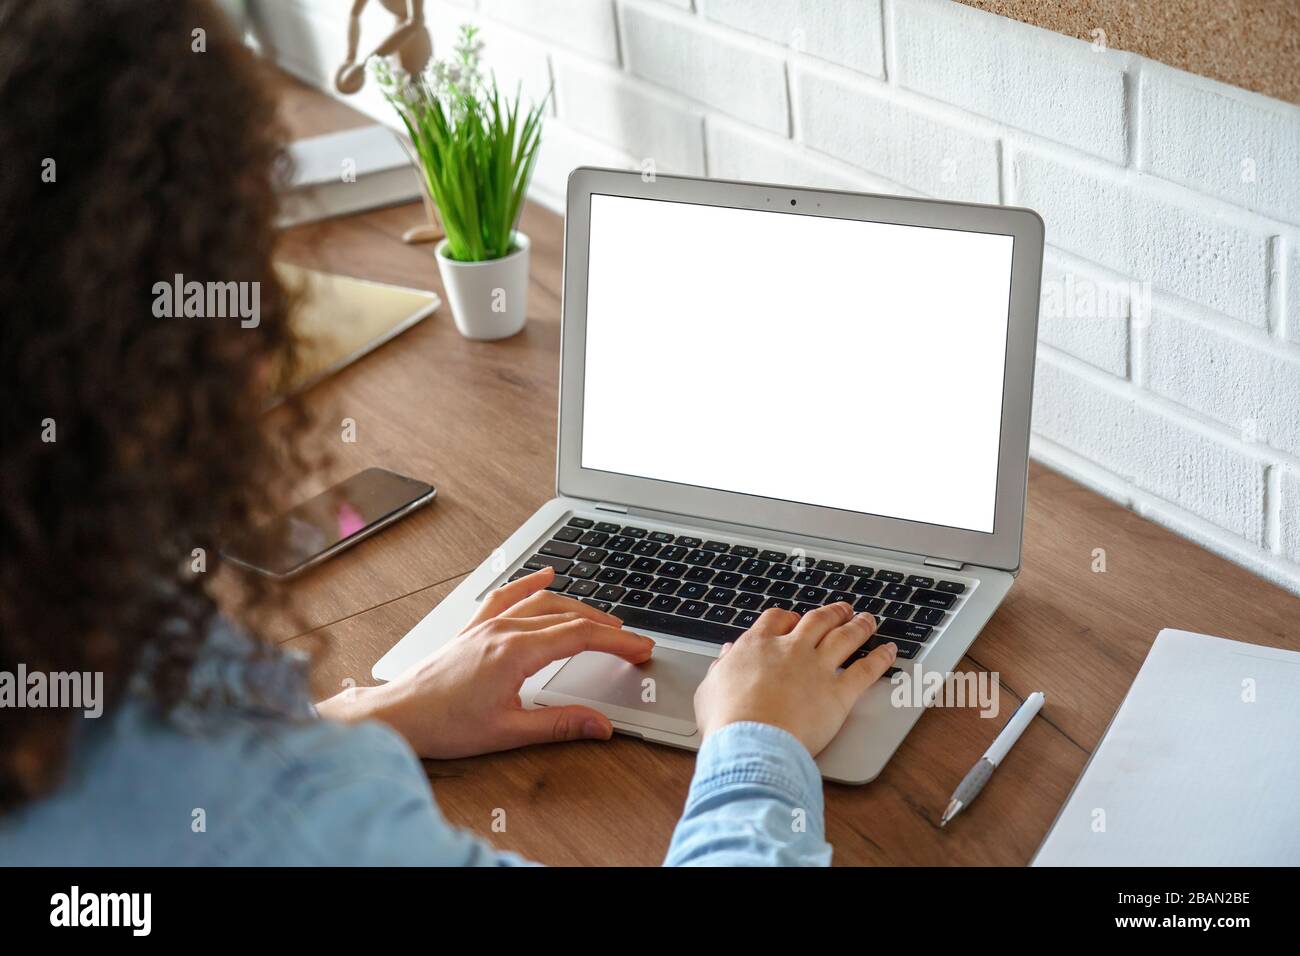 Afrikanisches Mädchen, das einen Laptop verwendet, verspottete den Bildschirm für Arbeit oder Studium. Stockfoto